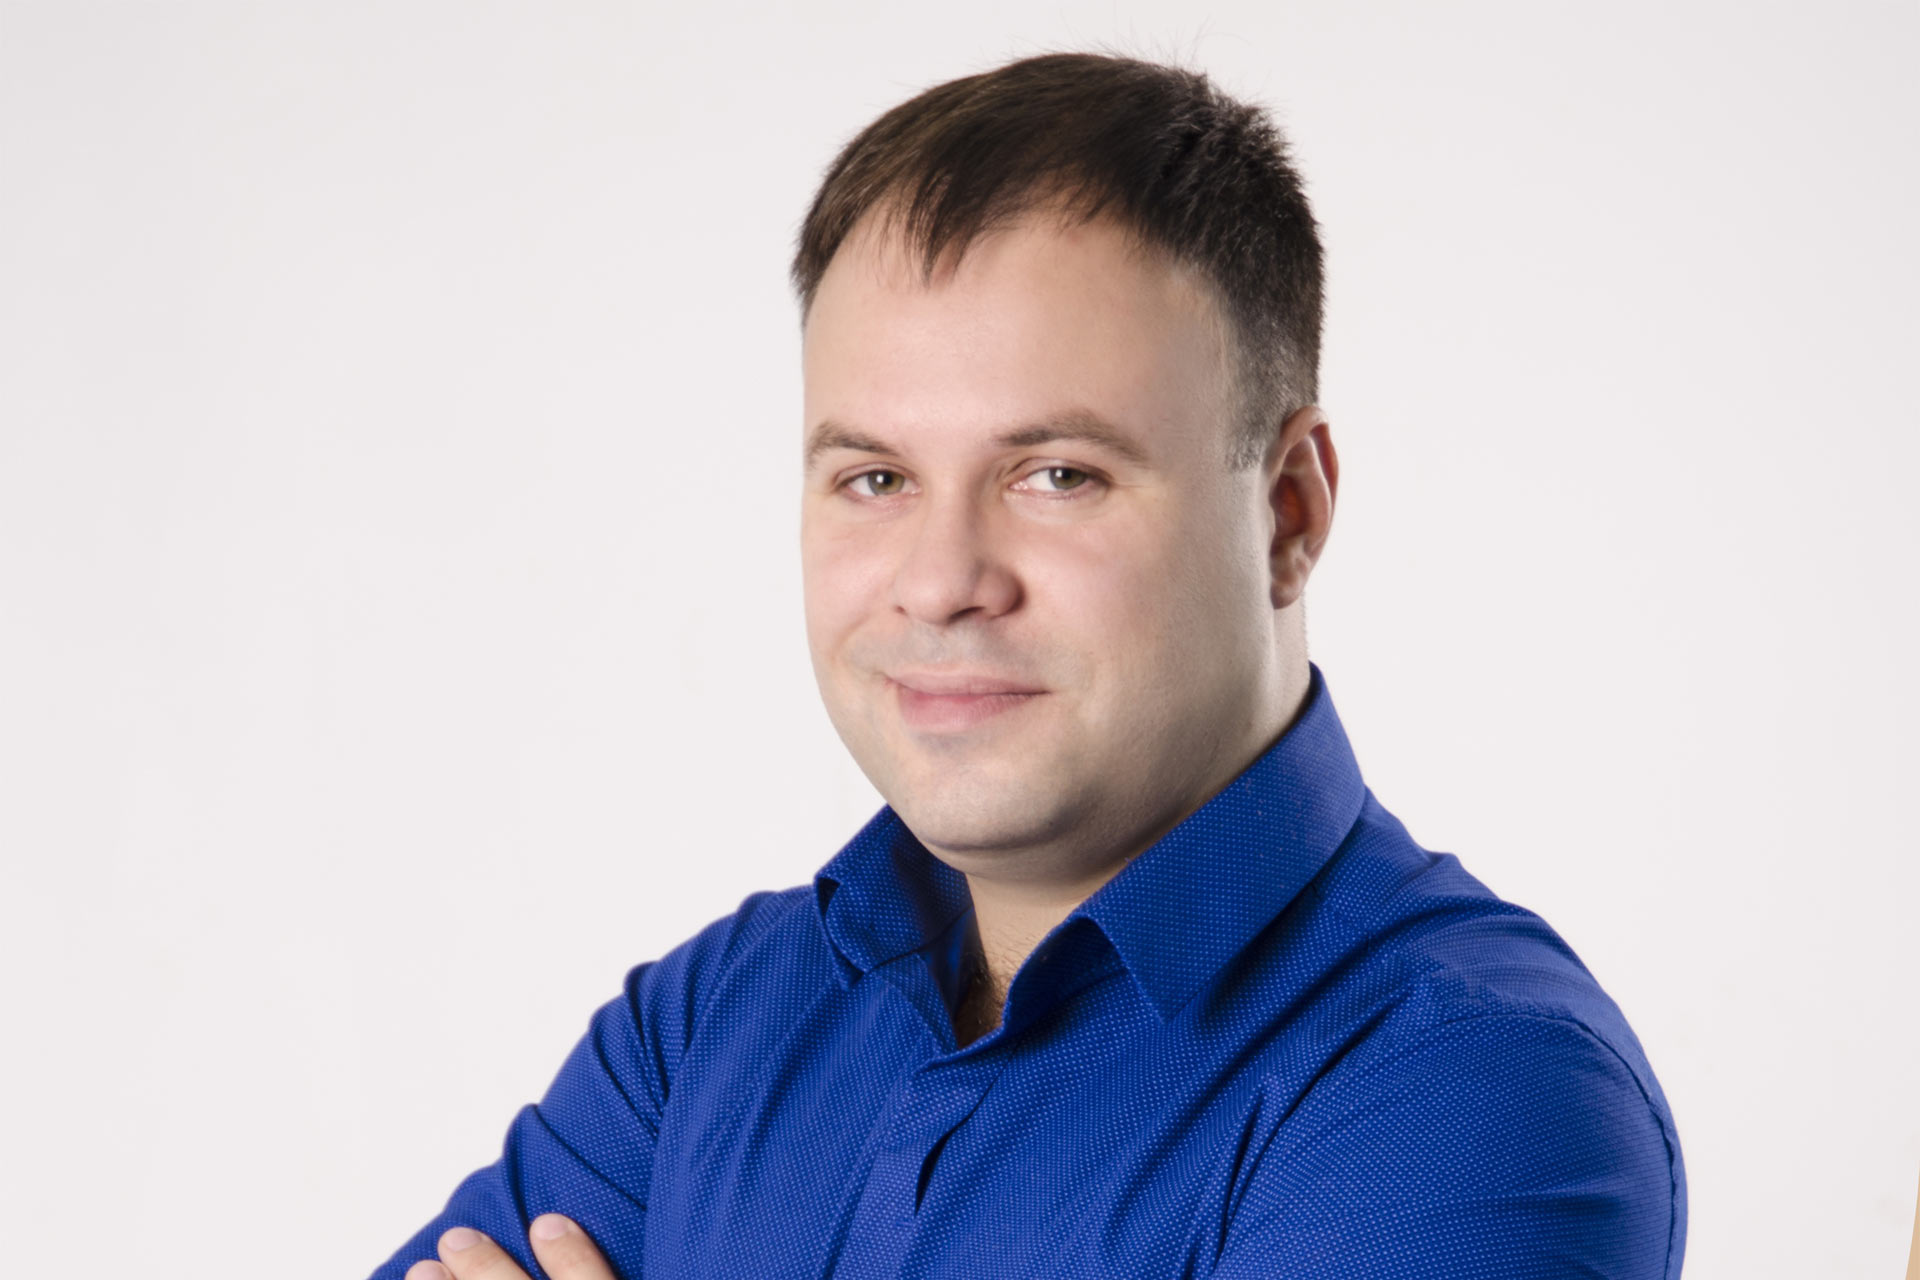 Станислав Покрышкин. Предприниматель, маркетолог, эксперт по позиционированию, генеральный директор маркетингового агентства «Косатка маркетинг».